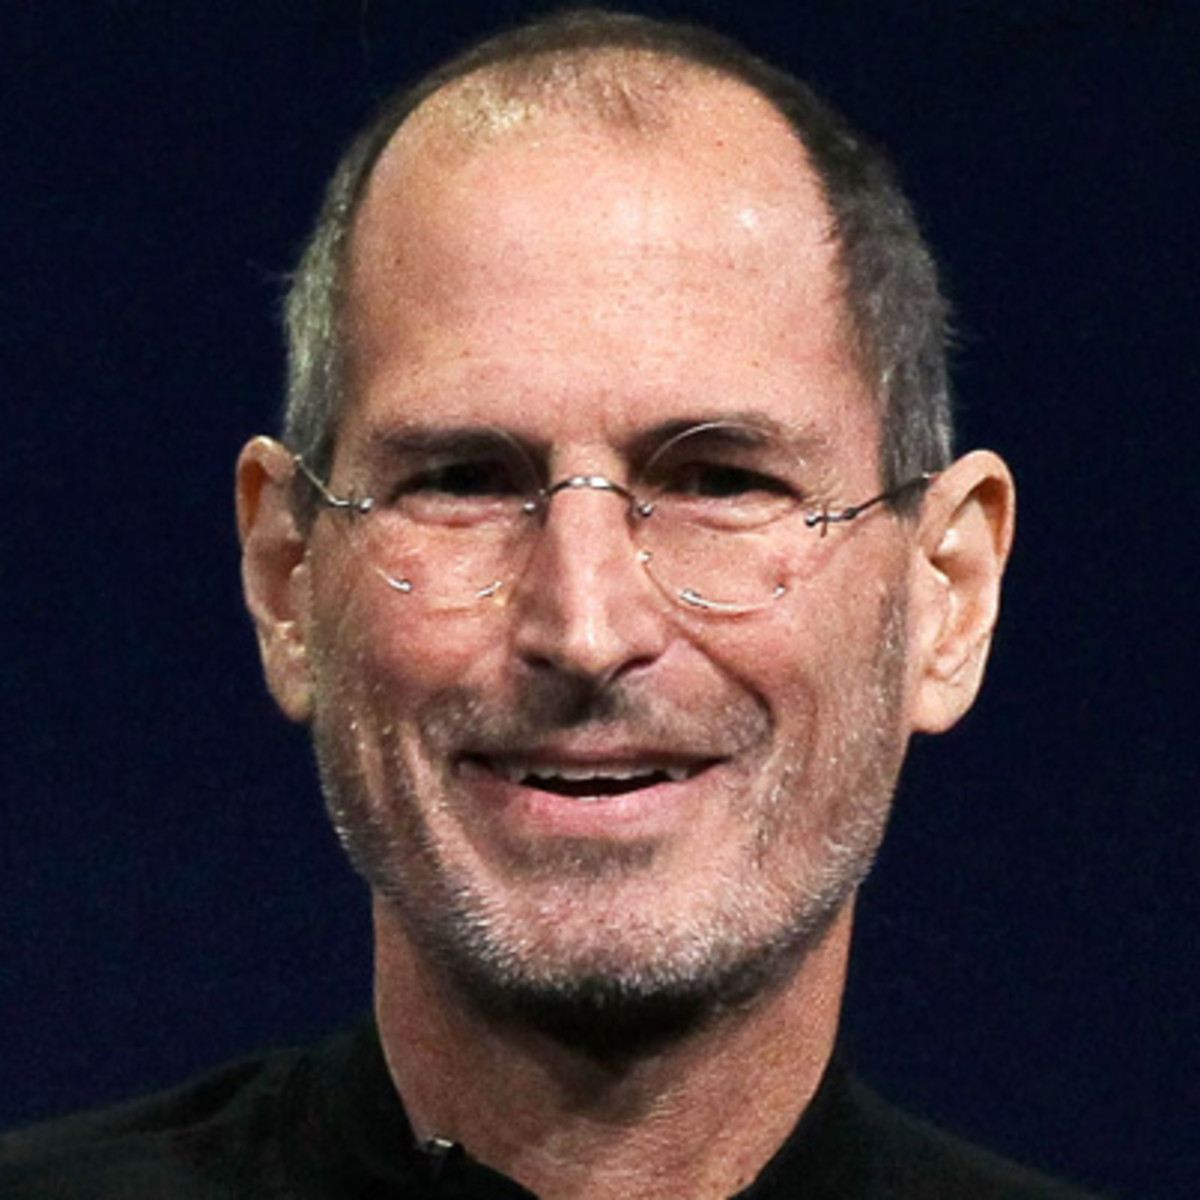 Steve Jobs Backgrounds, Compatible - PC, Mobile, Gadgets| 1200x1200 px